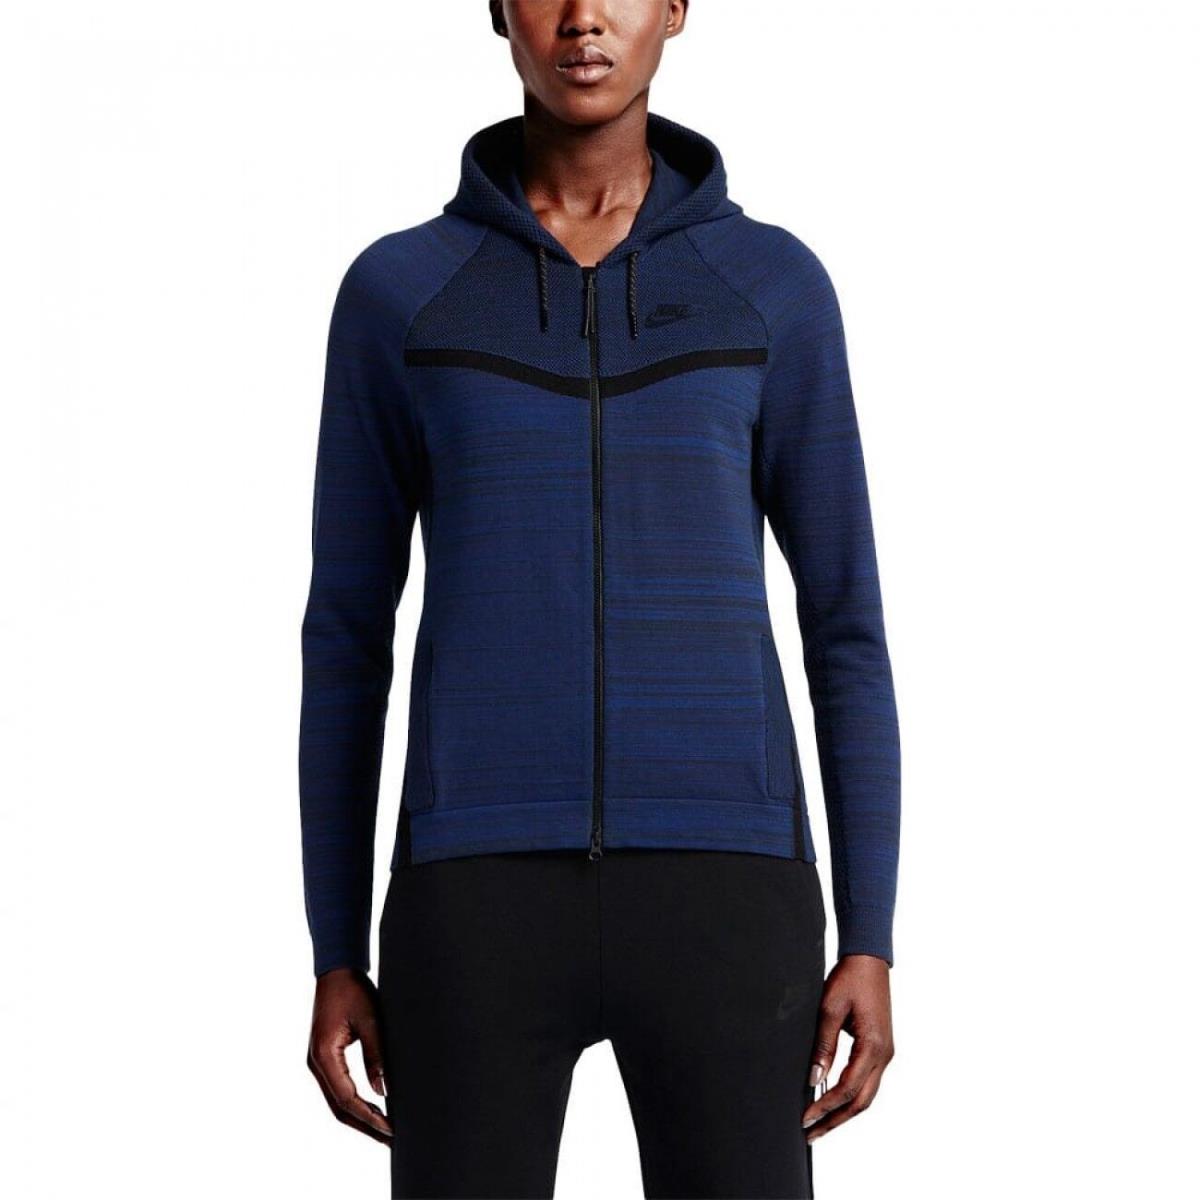 Nike Womens Tech Knit Windrunner Jacket Hoodie Obsidian Blue 728683 451